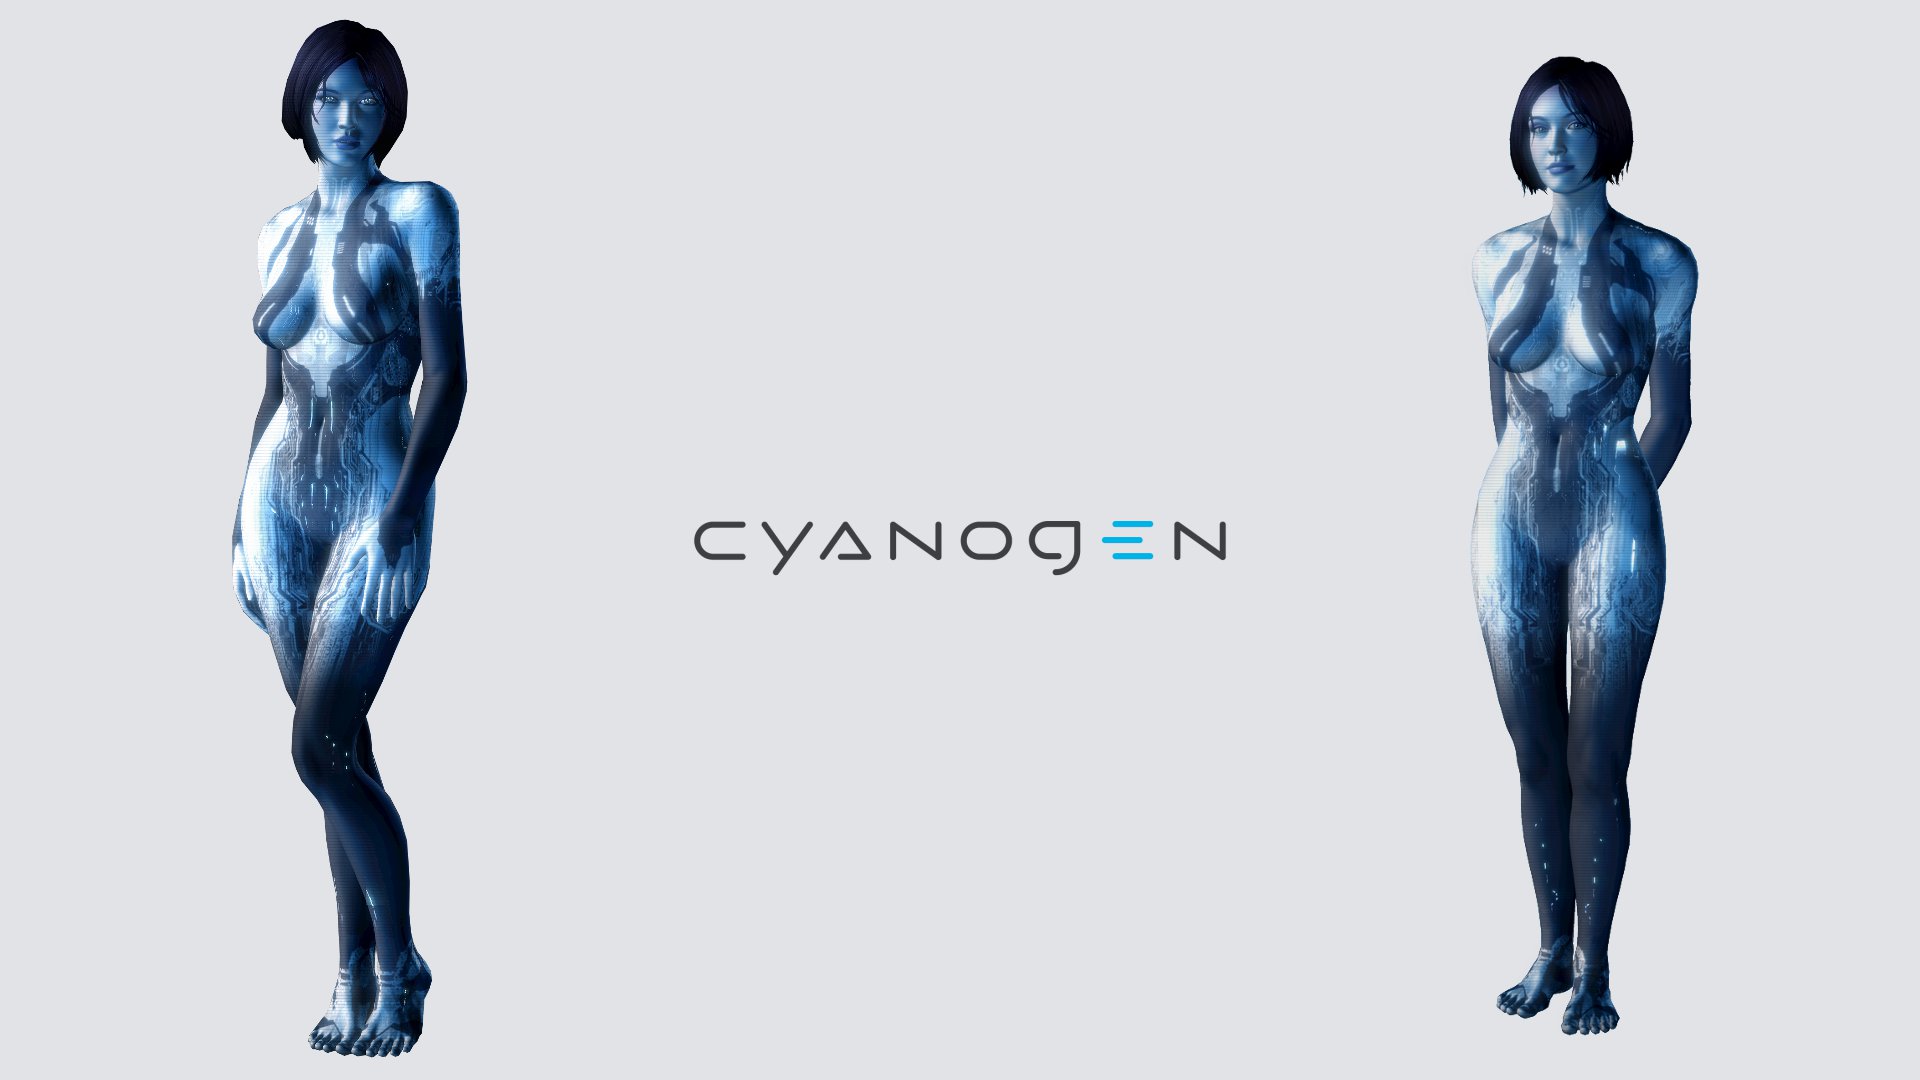 Cyanogen & Cortana